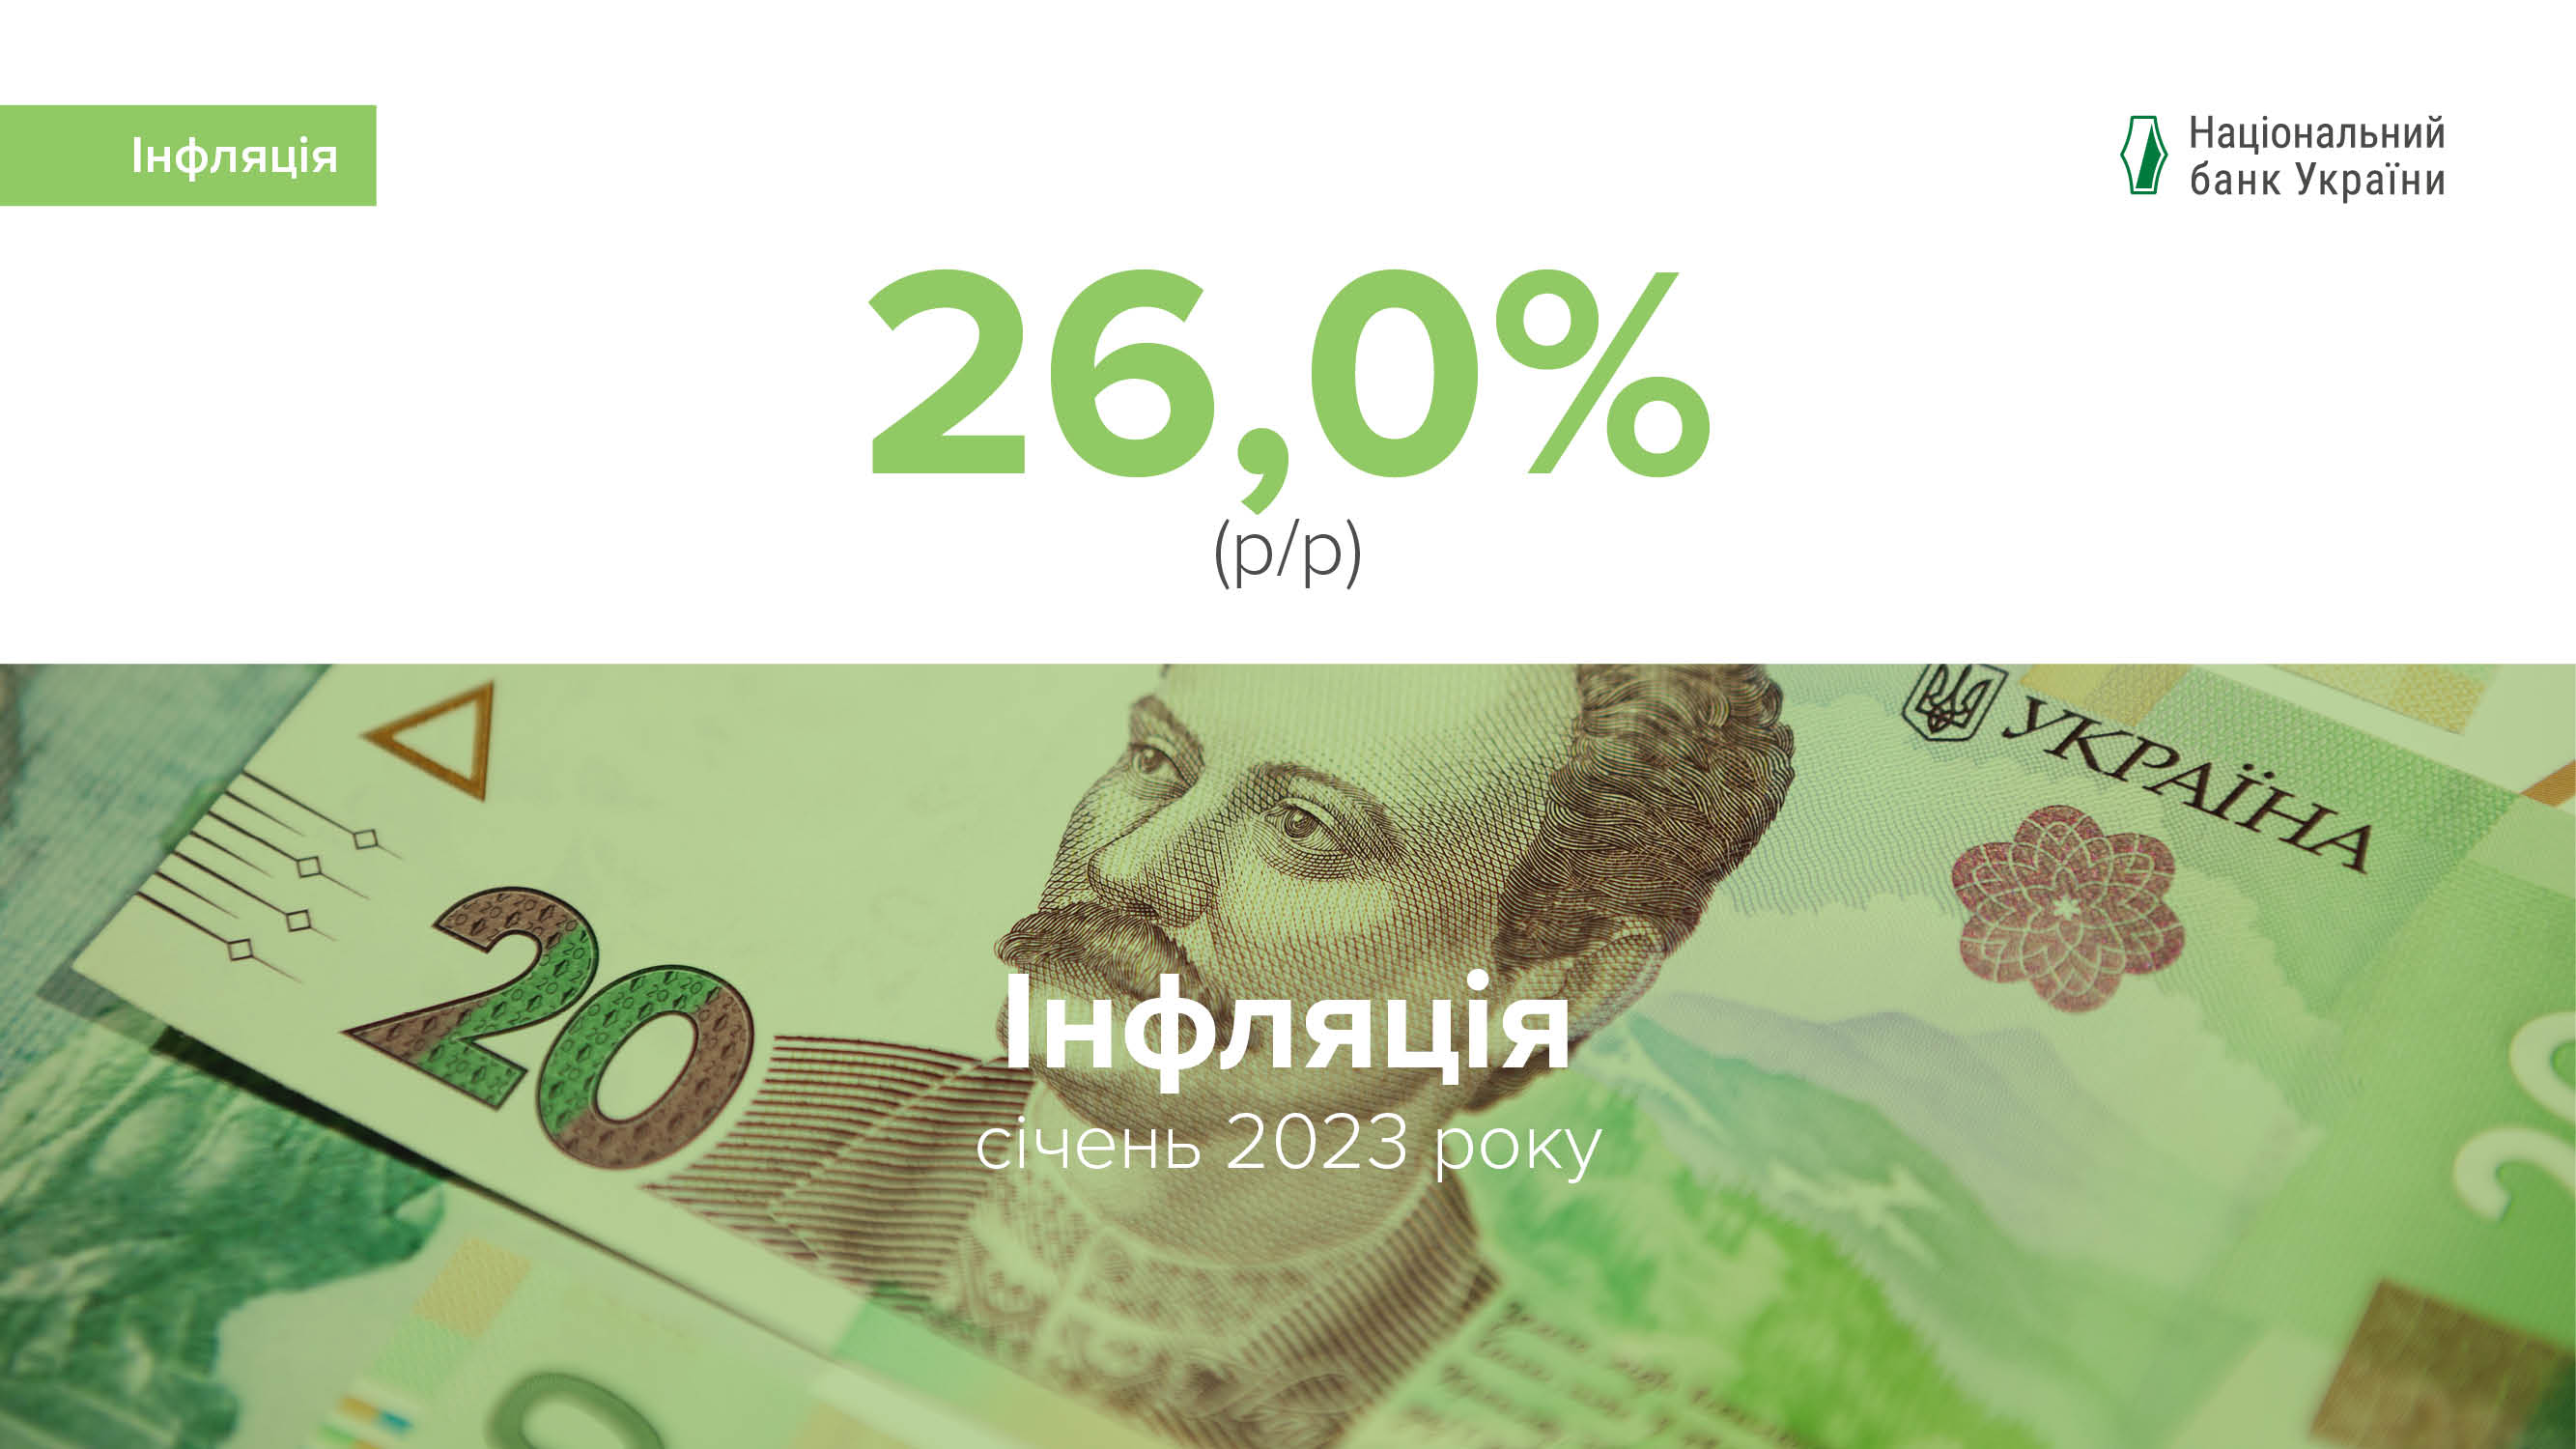 Коментар Національного банку щодо рівня інфляції в січні 2023 року